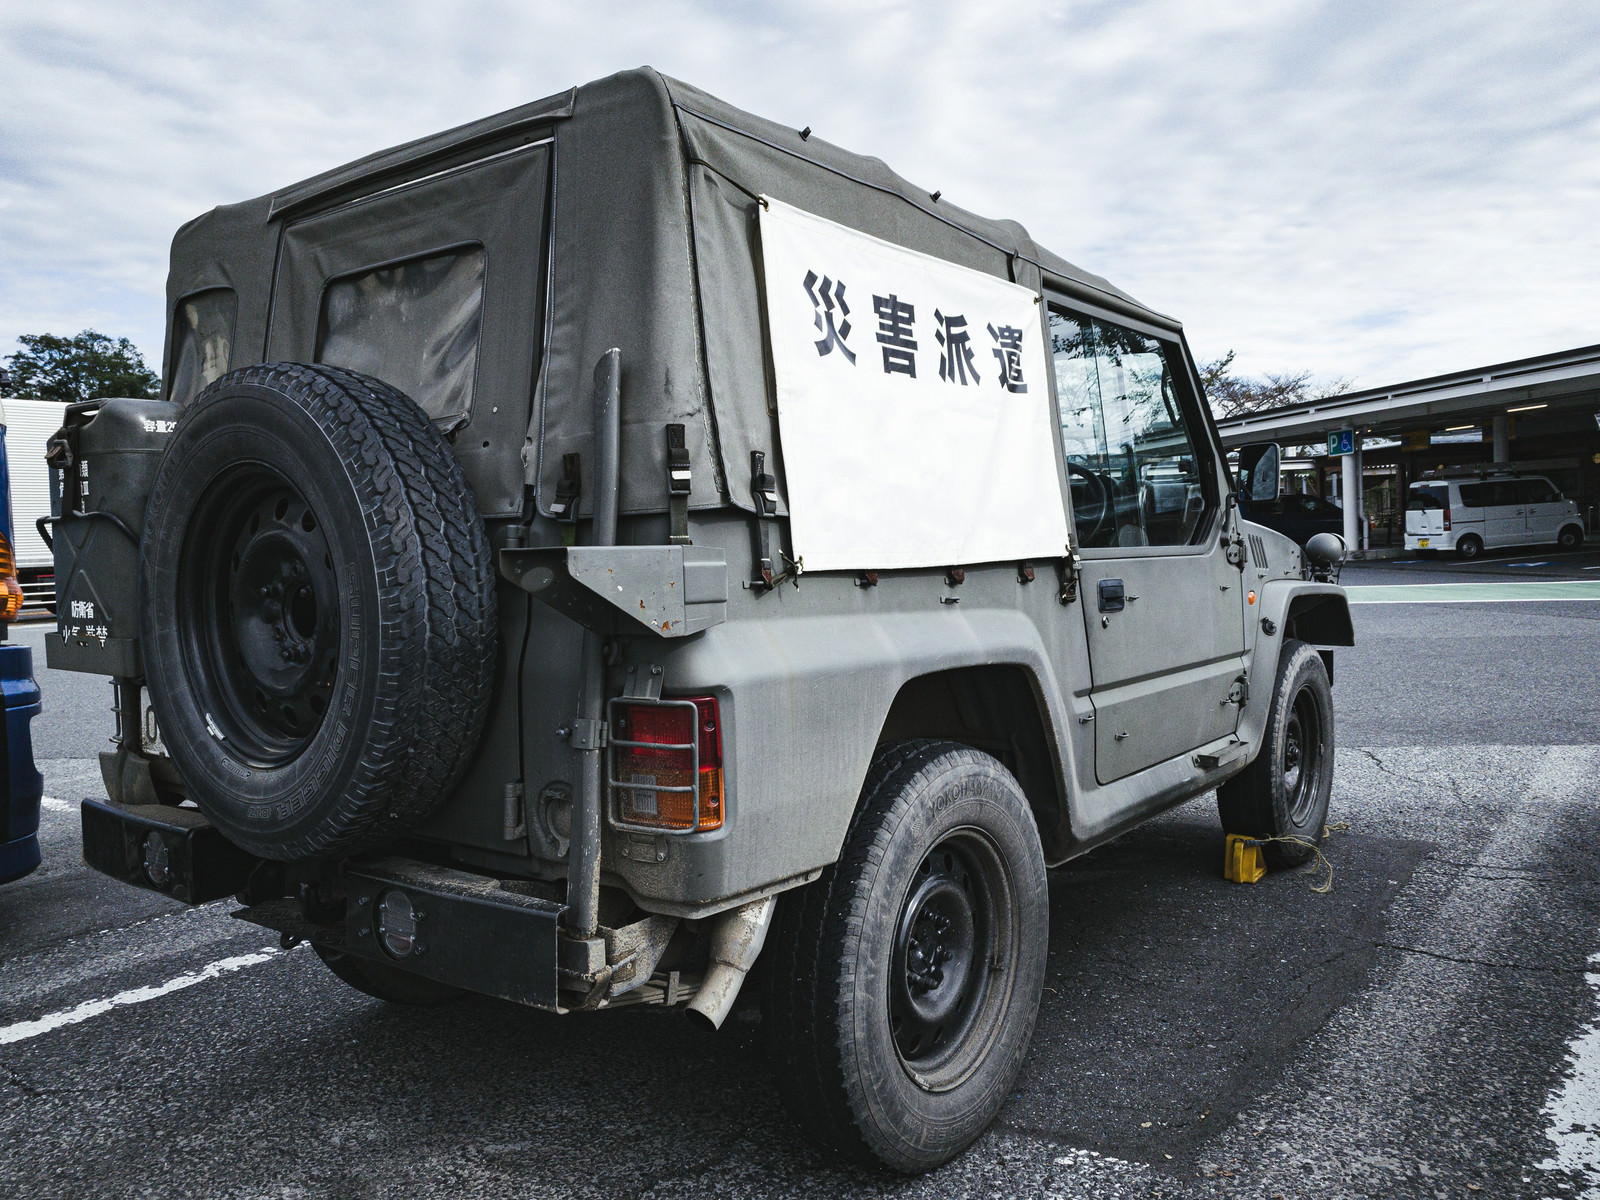 「災害派遣に向かう自衛隊のトラック | フリー素材のぱくたそ」の写真